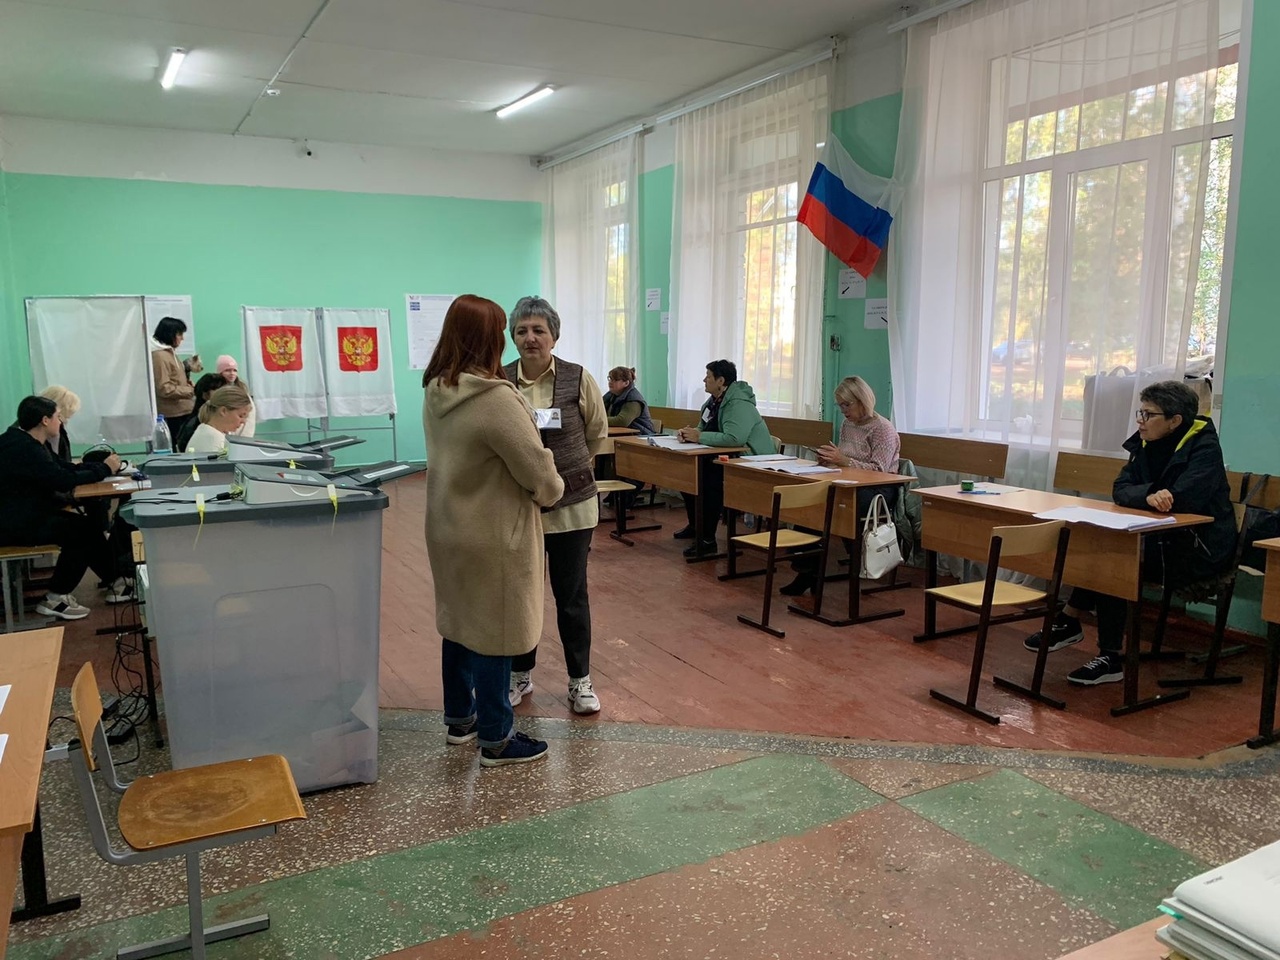 10 cентября - третий день голосования. Идут выборы депутатов областного Законодательного собрания и городской Думы.